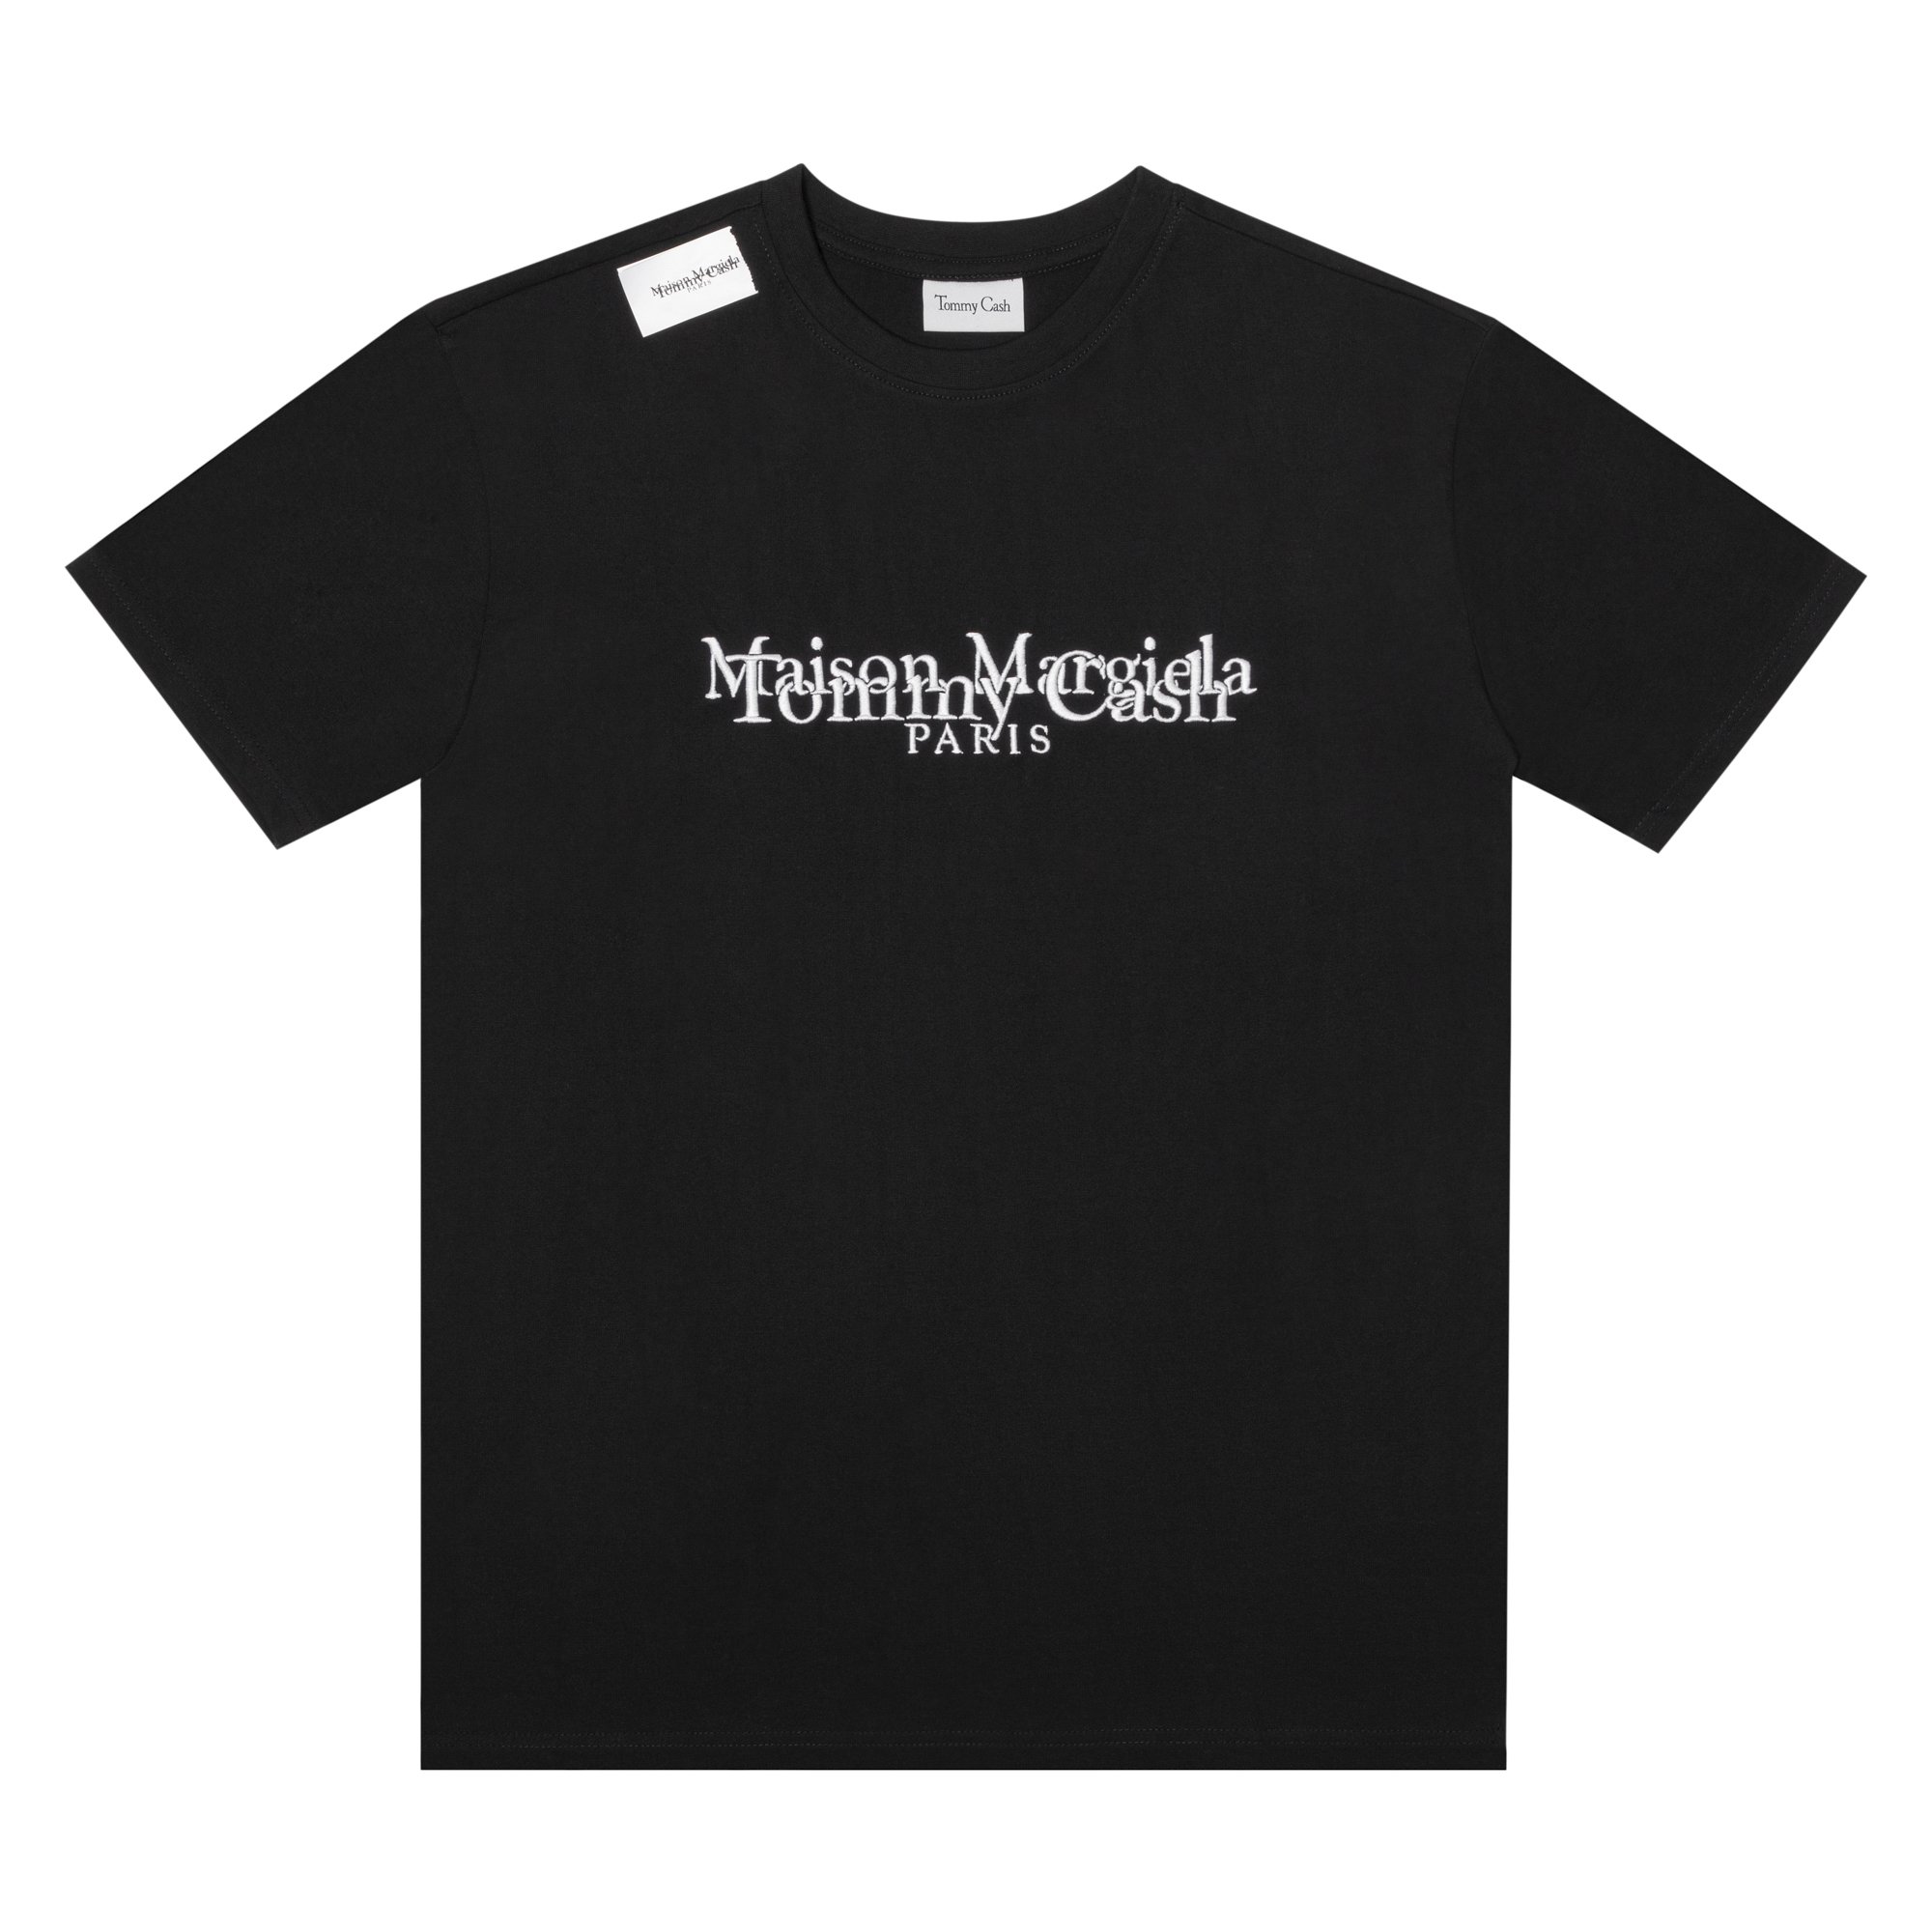 Tommy Cash x Maison Margiela T-shirt Black Men's - SS21 - US